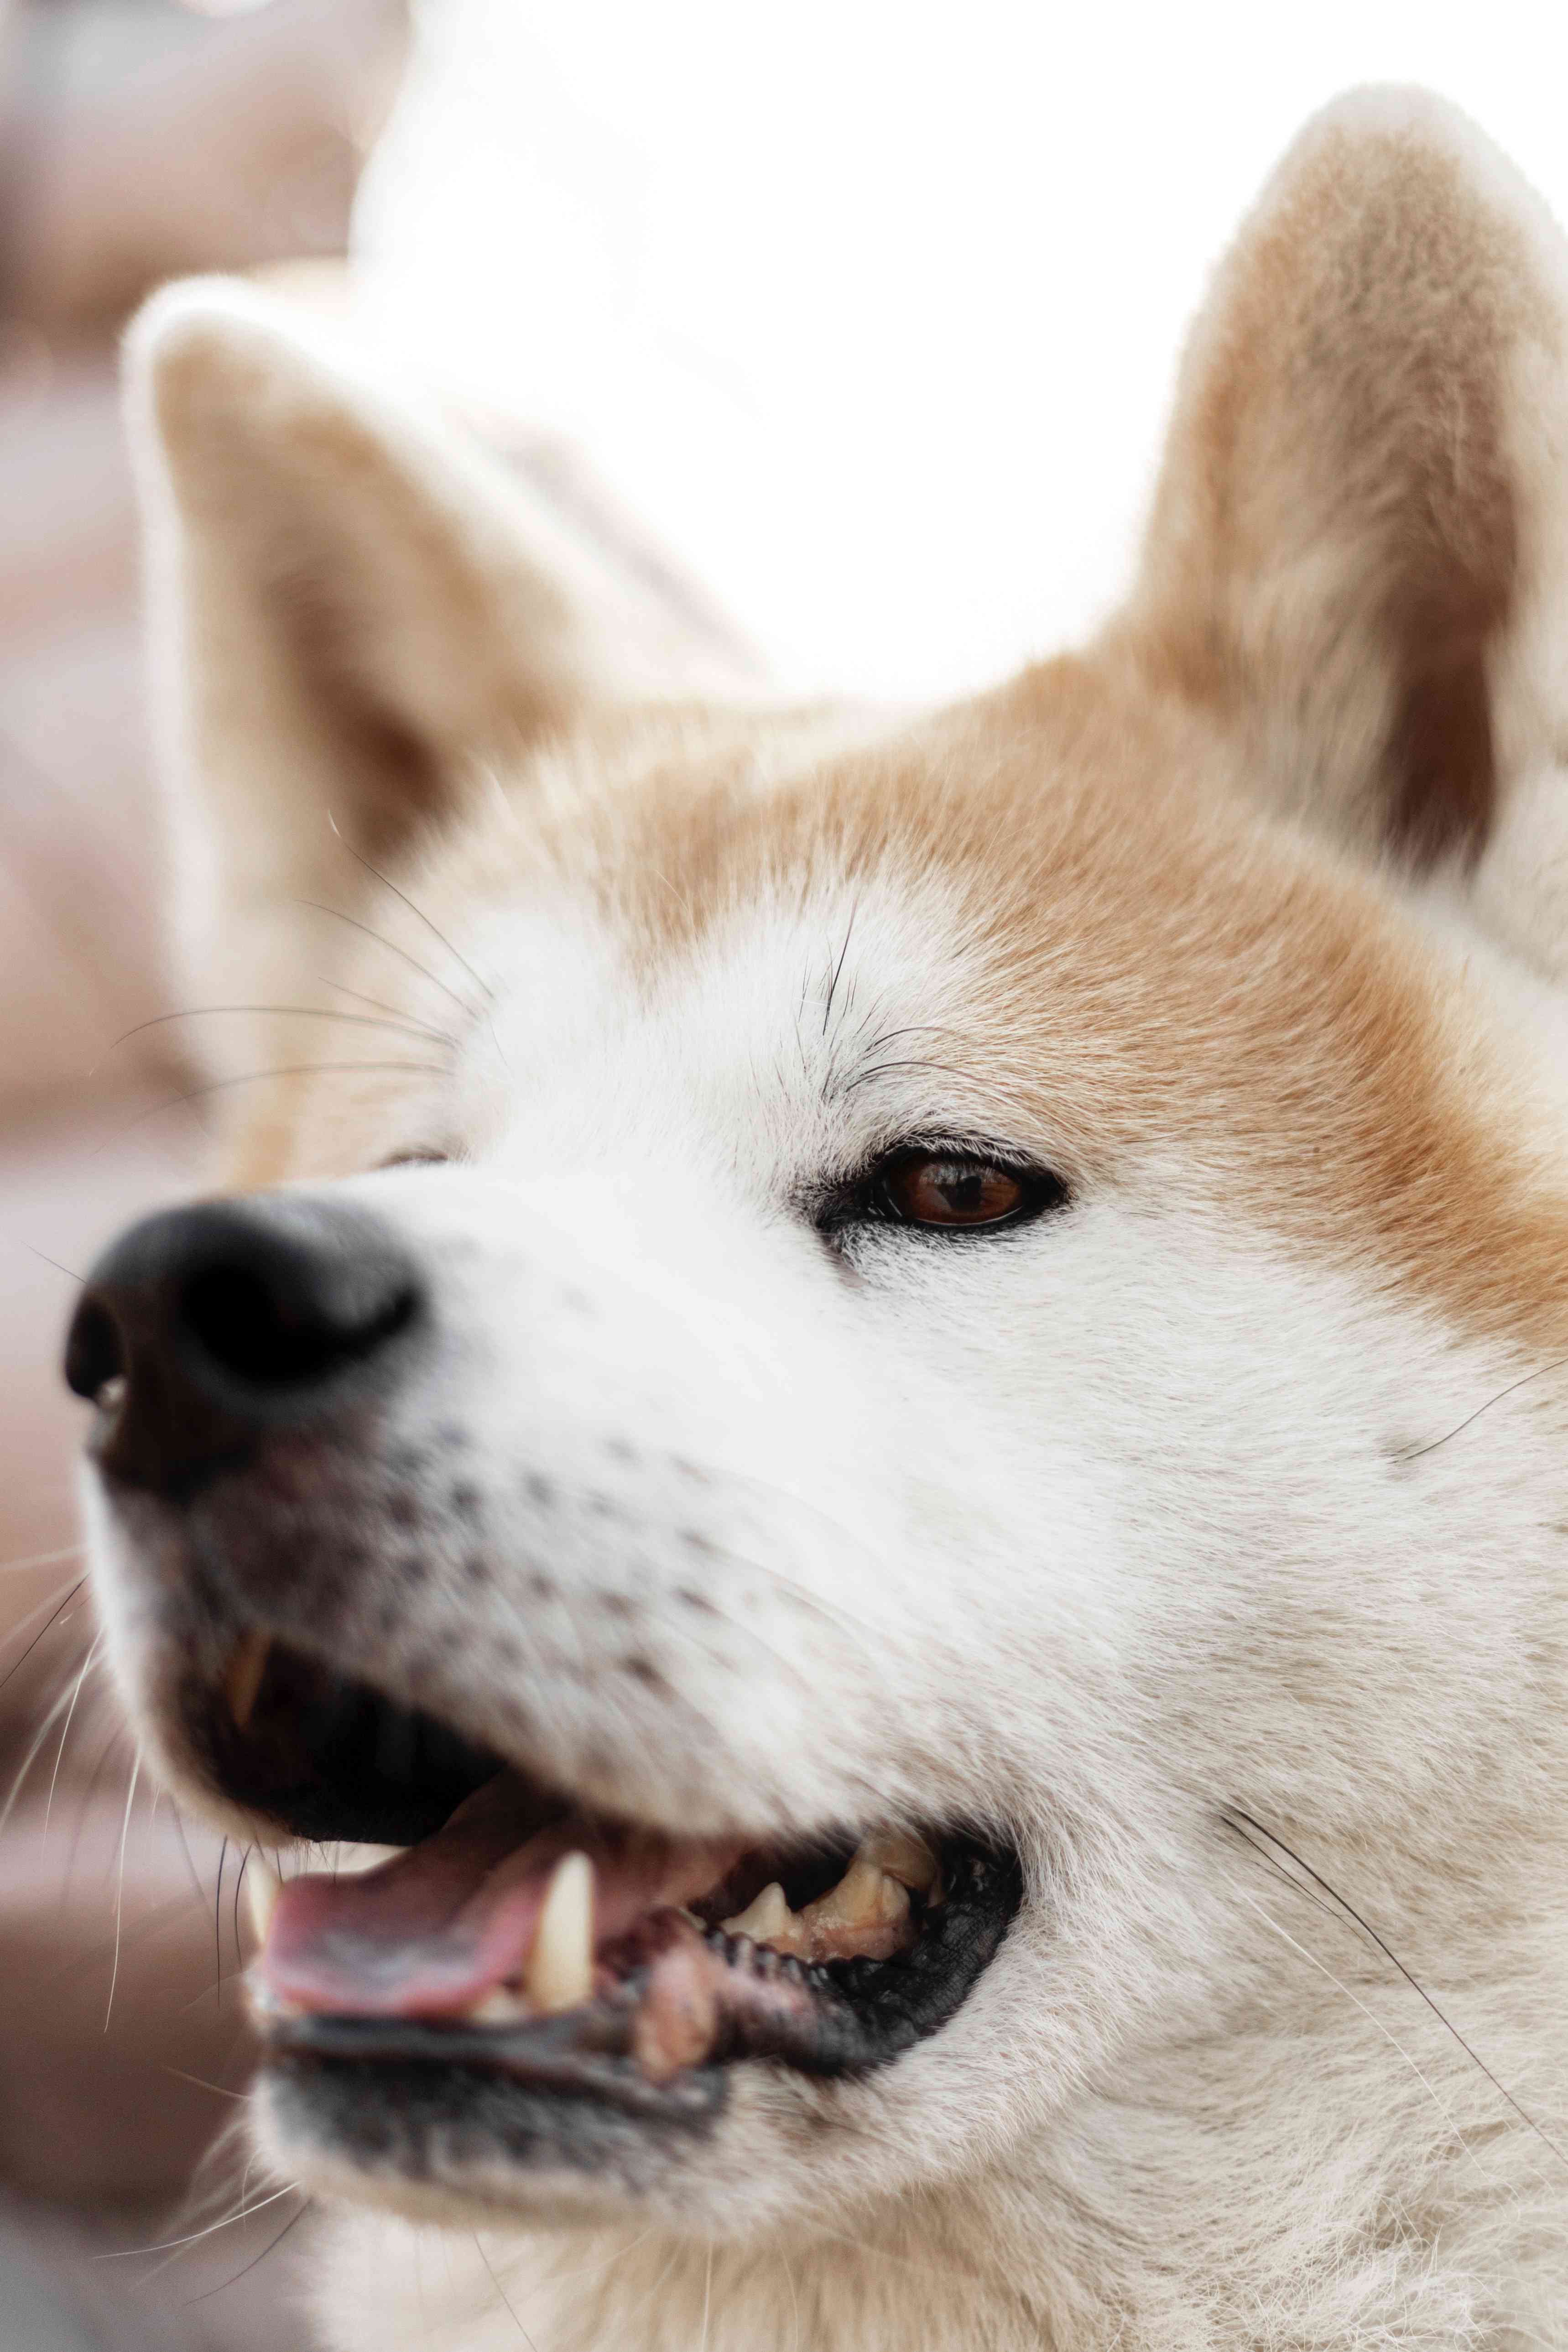 Акита-ину, выдающаяся порода, очаровала любителей собак во всем мире своим сочетанием темперамента, преданности и храбрости. Родом из Японии, эти собаки известн...